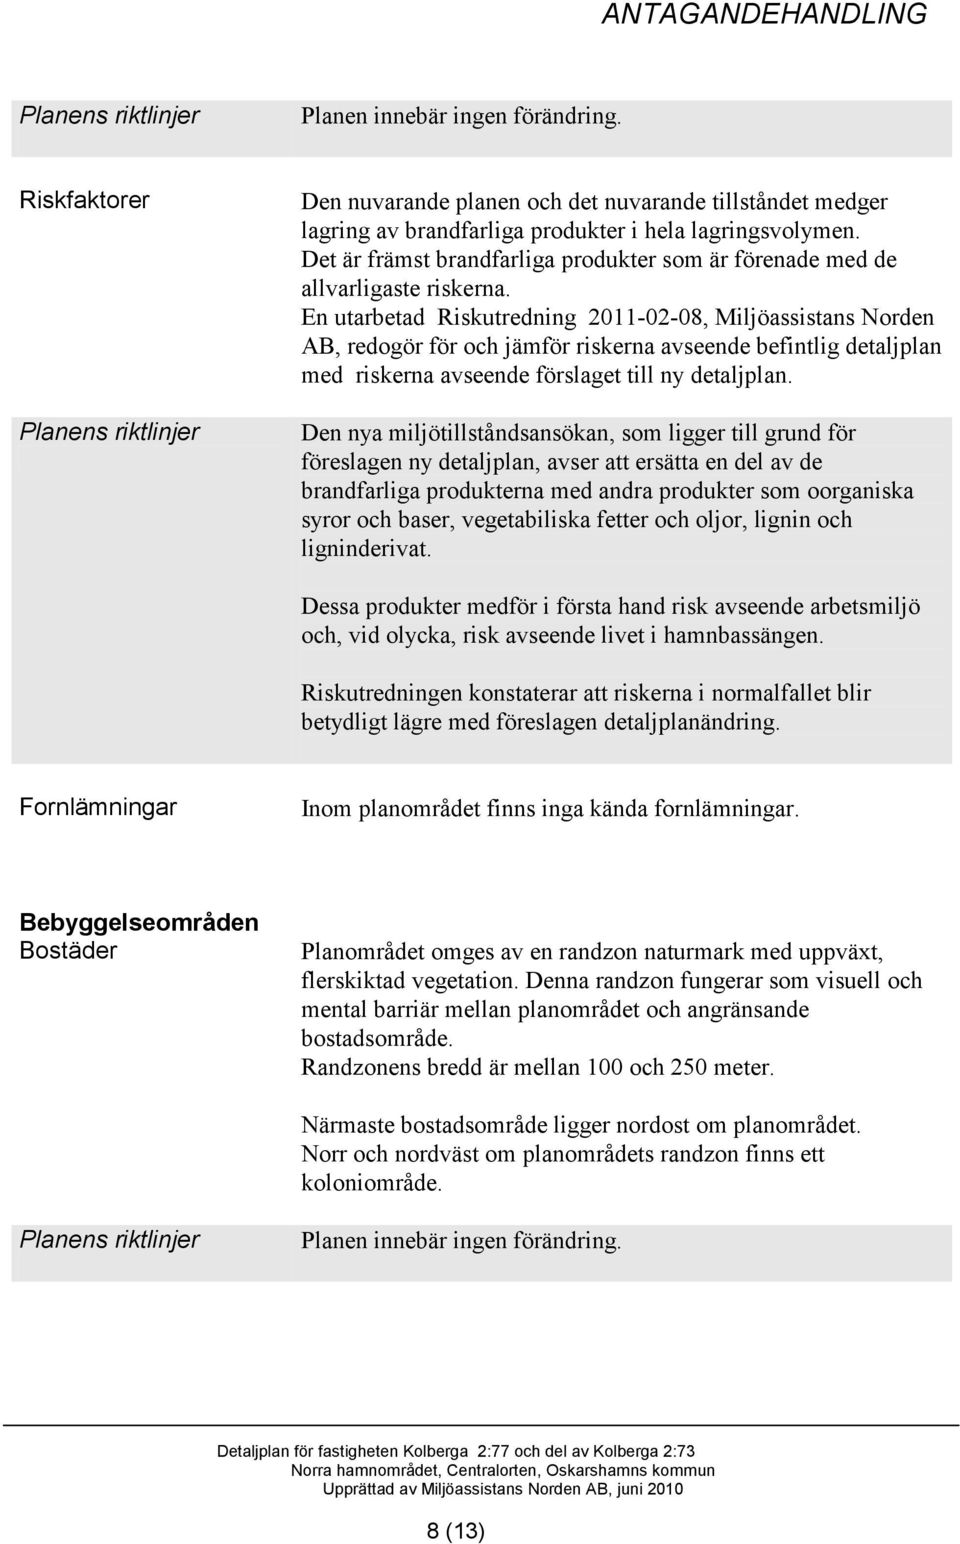 En utarbetad Riskutredning 2011-02-08, Miljöassistans Norden AB, redogör för och jämför riskerna avseende befintlig detaljplan med riskerna avseende förslaget till ny detaljplan.